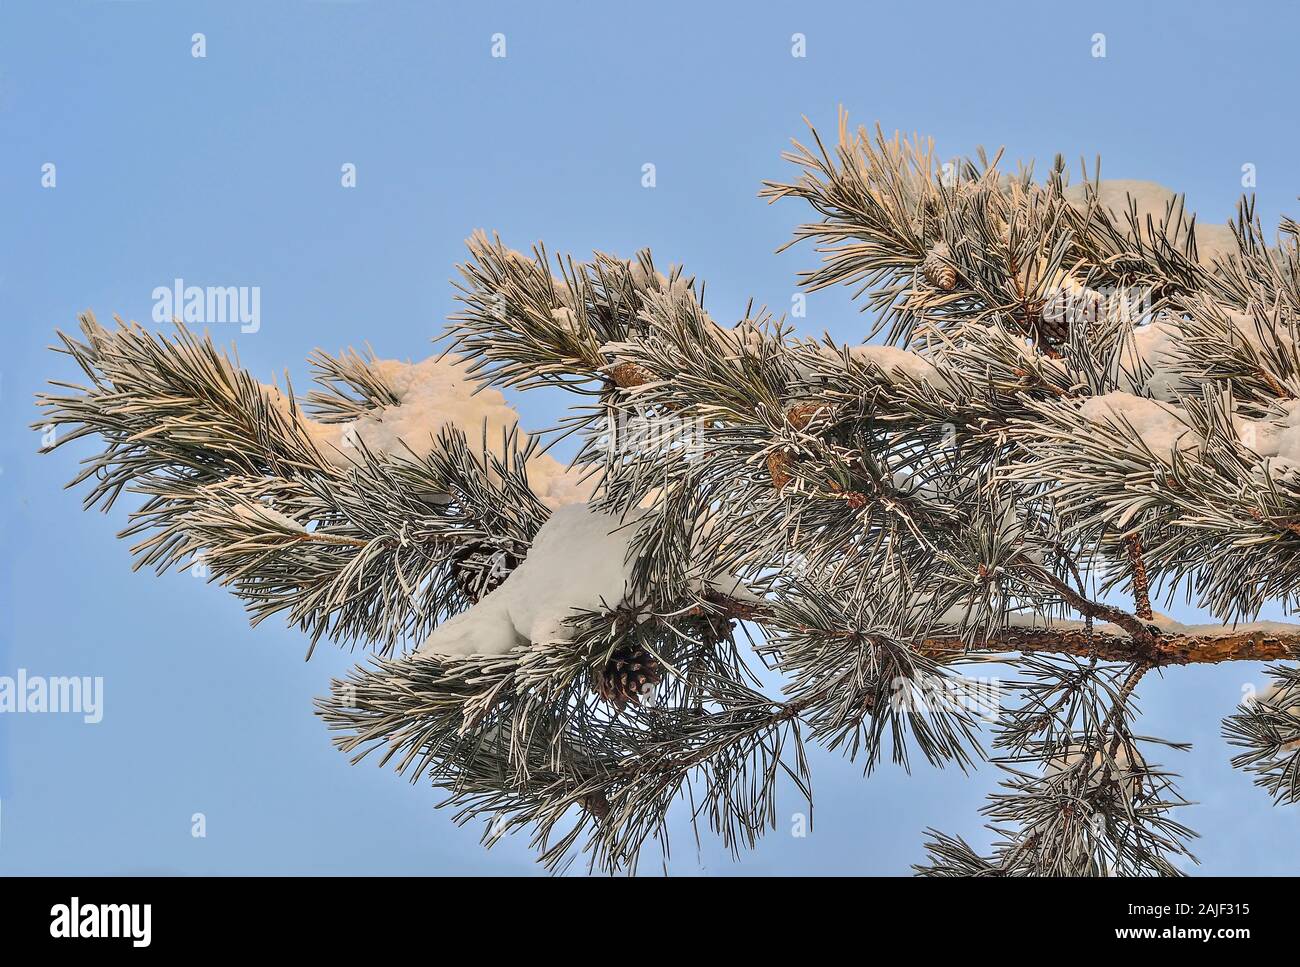 Weißer Schnee und Raureif auf Pine Tree Branch mit Kegeln in der Nähe auf und blauer Himmel. Grüne Nadeln von Koniferen Baum mit Rauhreif bedeckt bei Sunshine Stockfoto